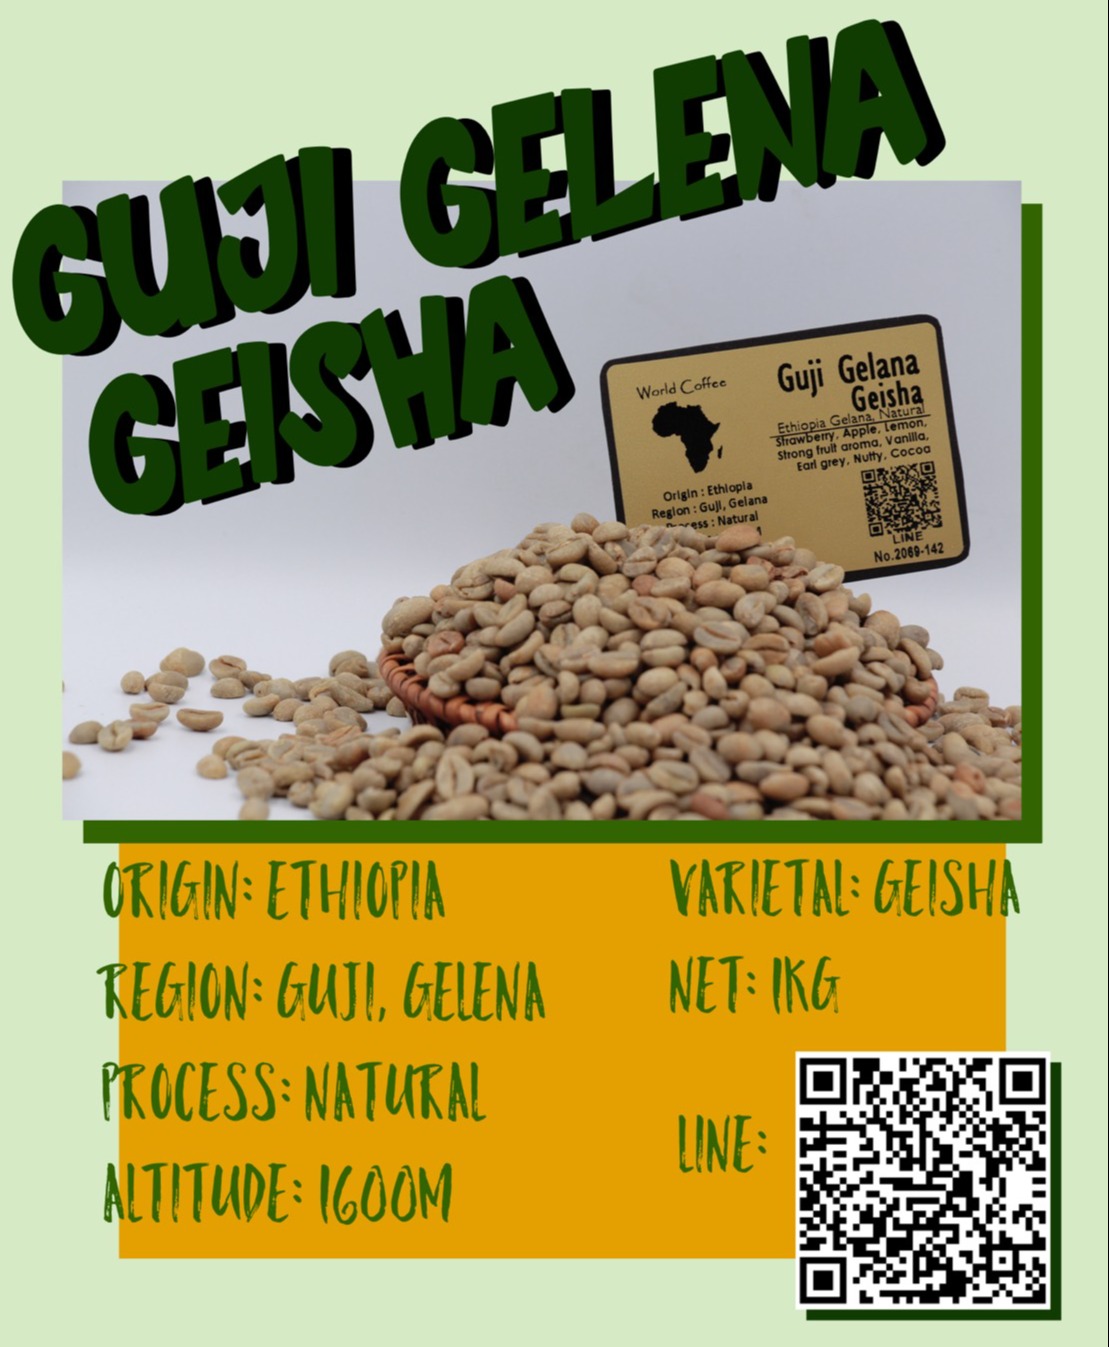 พร้อมส่ง เมล็ดกาแฟดิบ Guji Gelena Geisha Natural Process ขนาด 1kg / เมล็ดกาแฟนอก/เมล็ดกาแฟสารบราซิล/  Guji Gelena Geisha 1kg